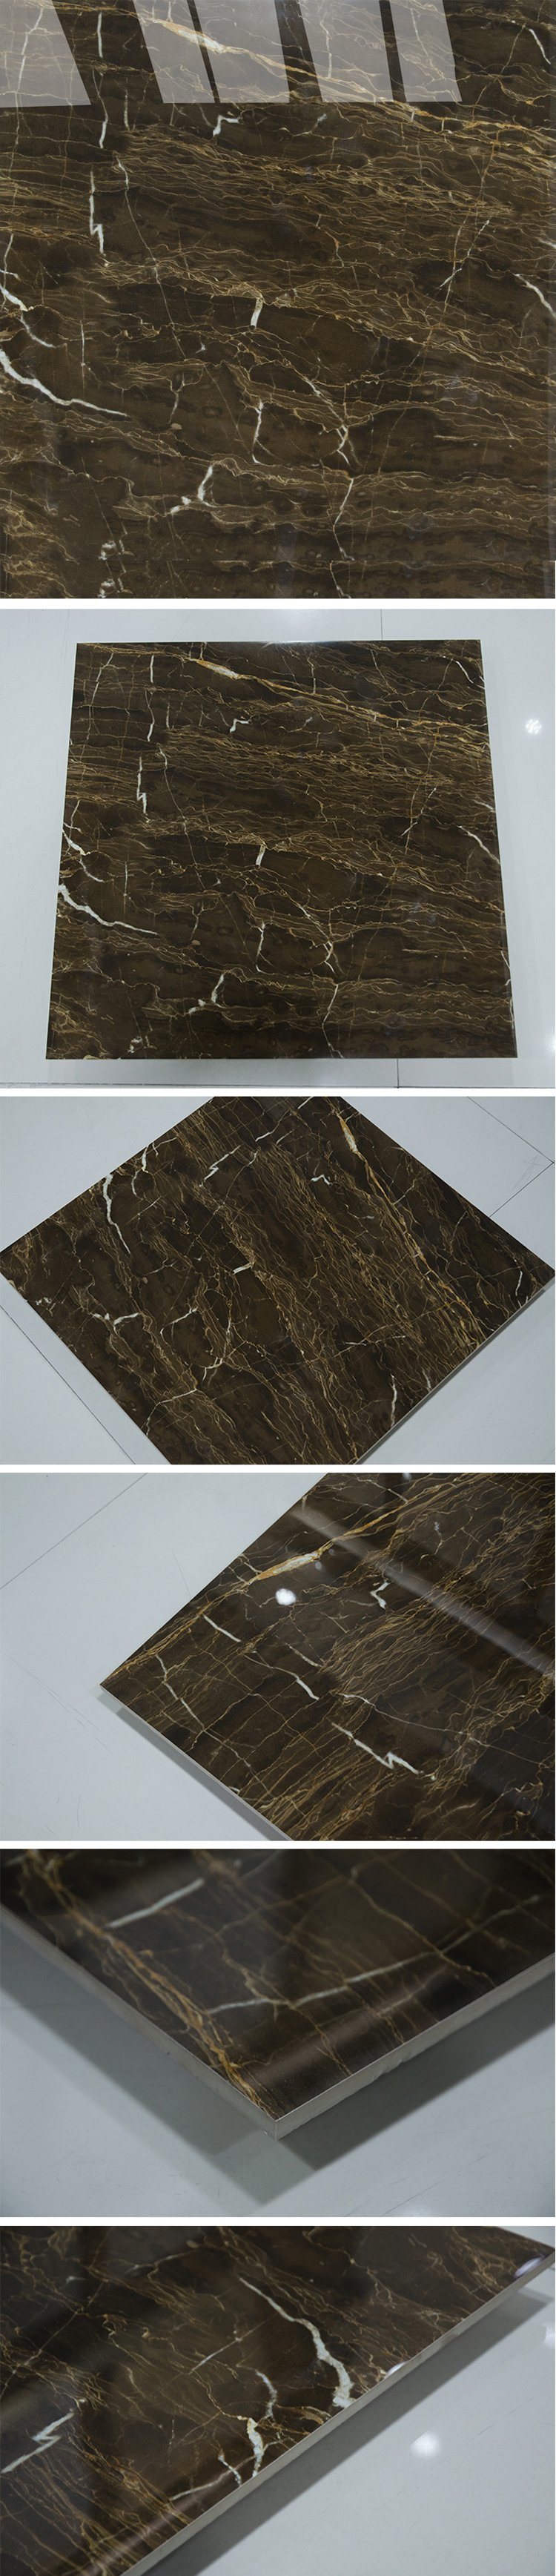 Lowes Floor Tiles for Bathrooms Emperador Dark Marble Porcelain Tile